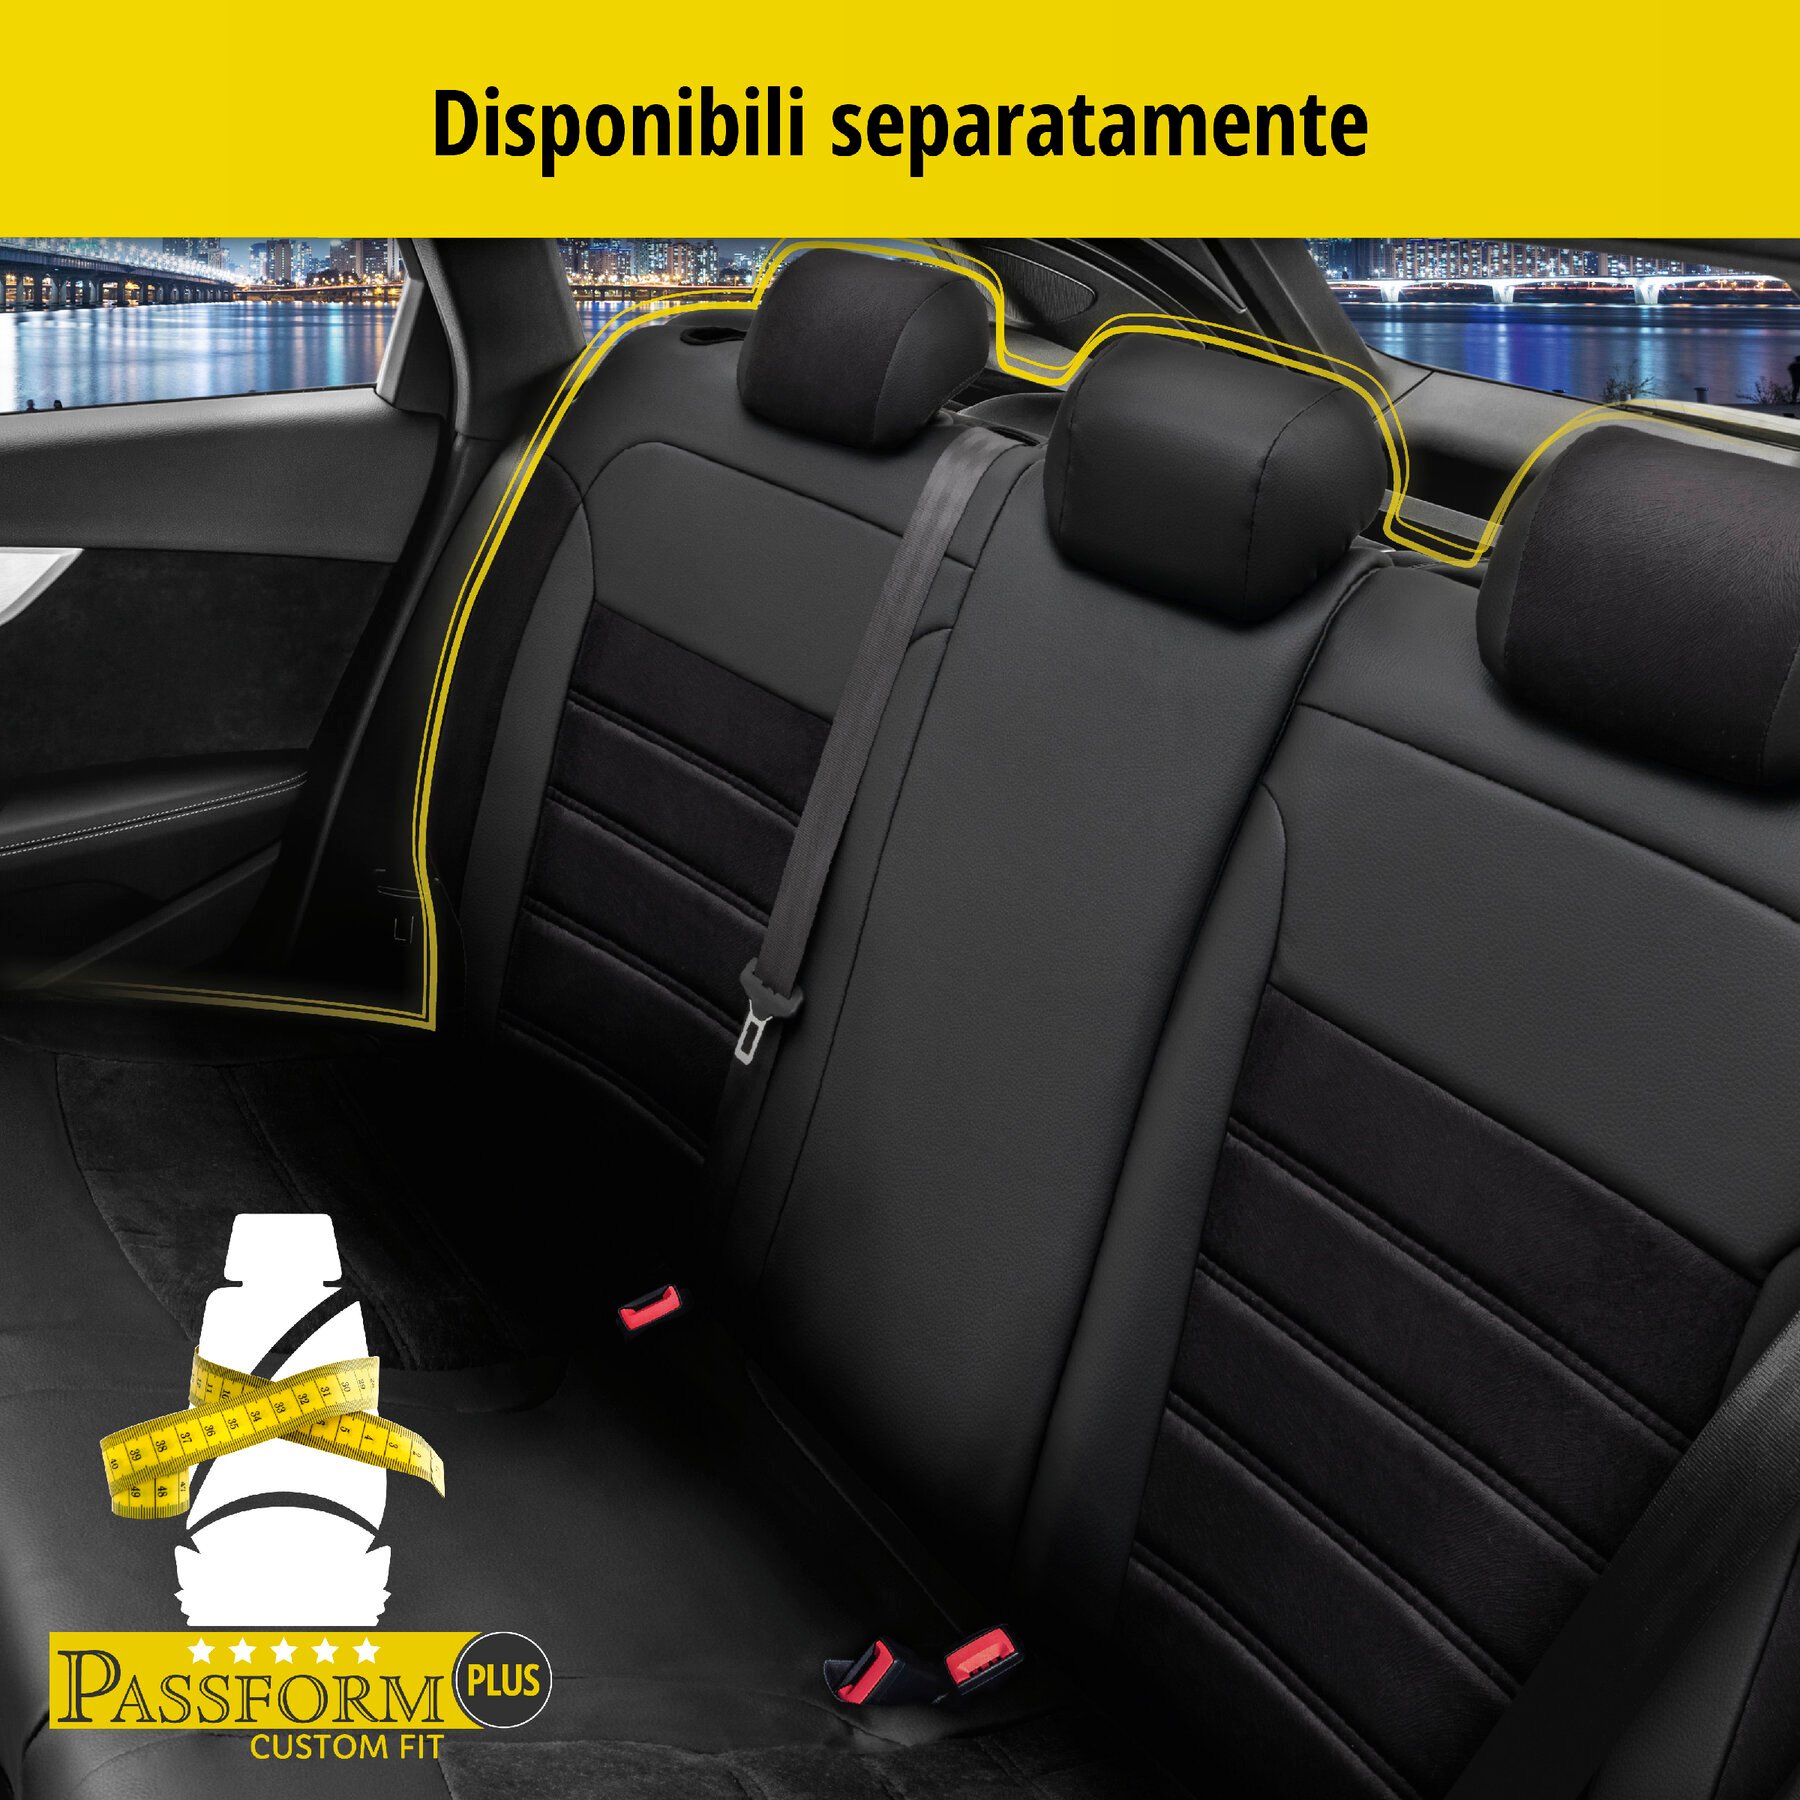 Coprisedili Bari per Mercedes-Benz Classe C 09/2014-Oggi, 2 coprisedili singoli per sedili normali